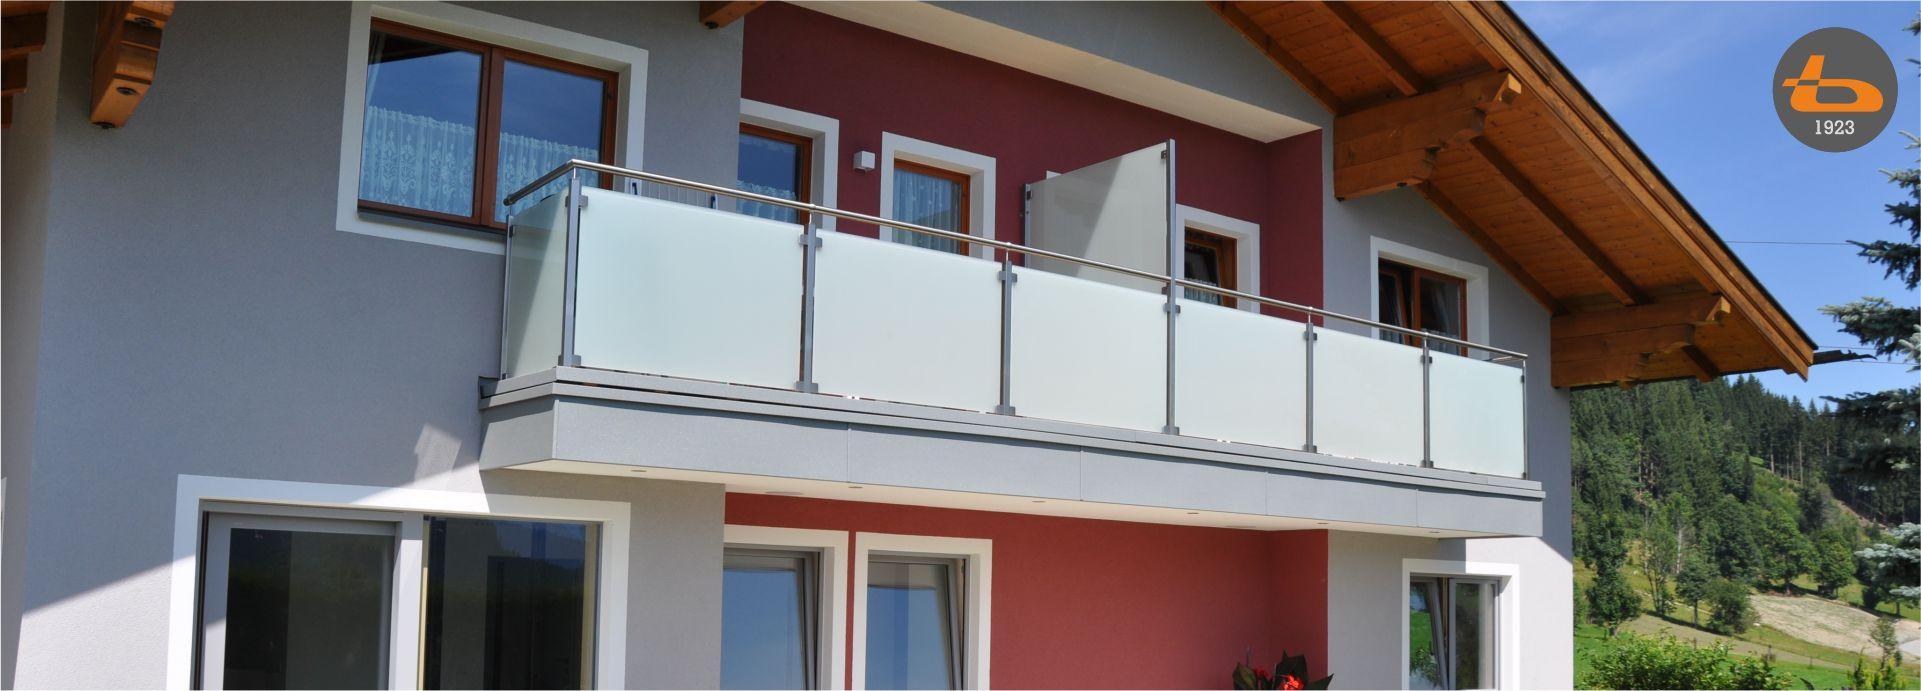 Brenter Balkone Alu Holz Glas Und Edelstahlgelander Direkt Ab Werk Home